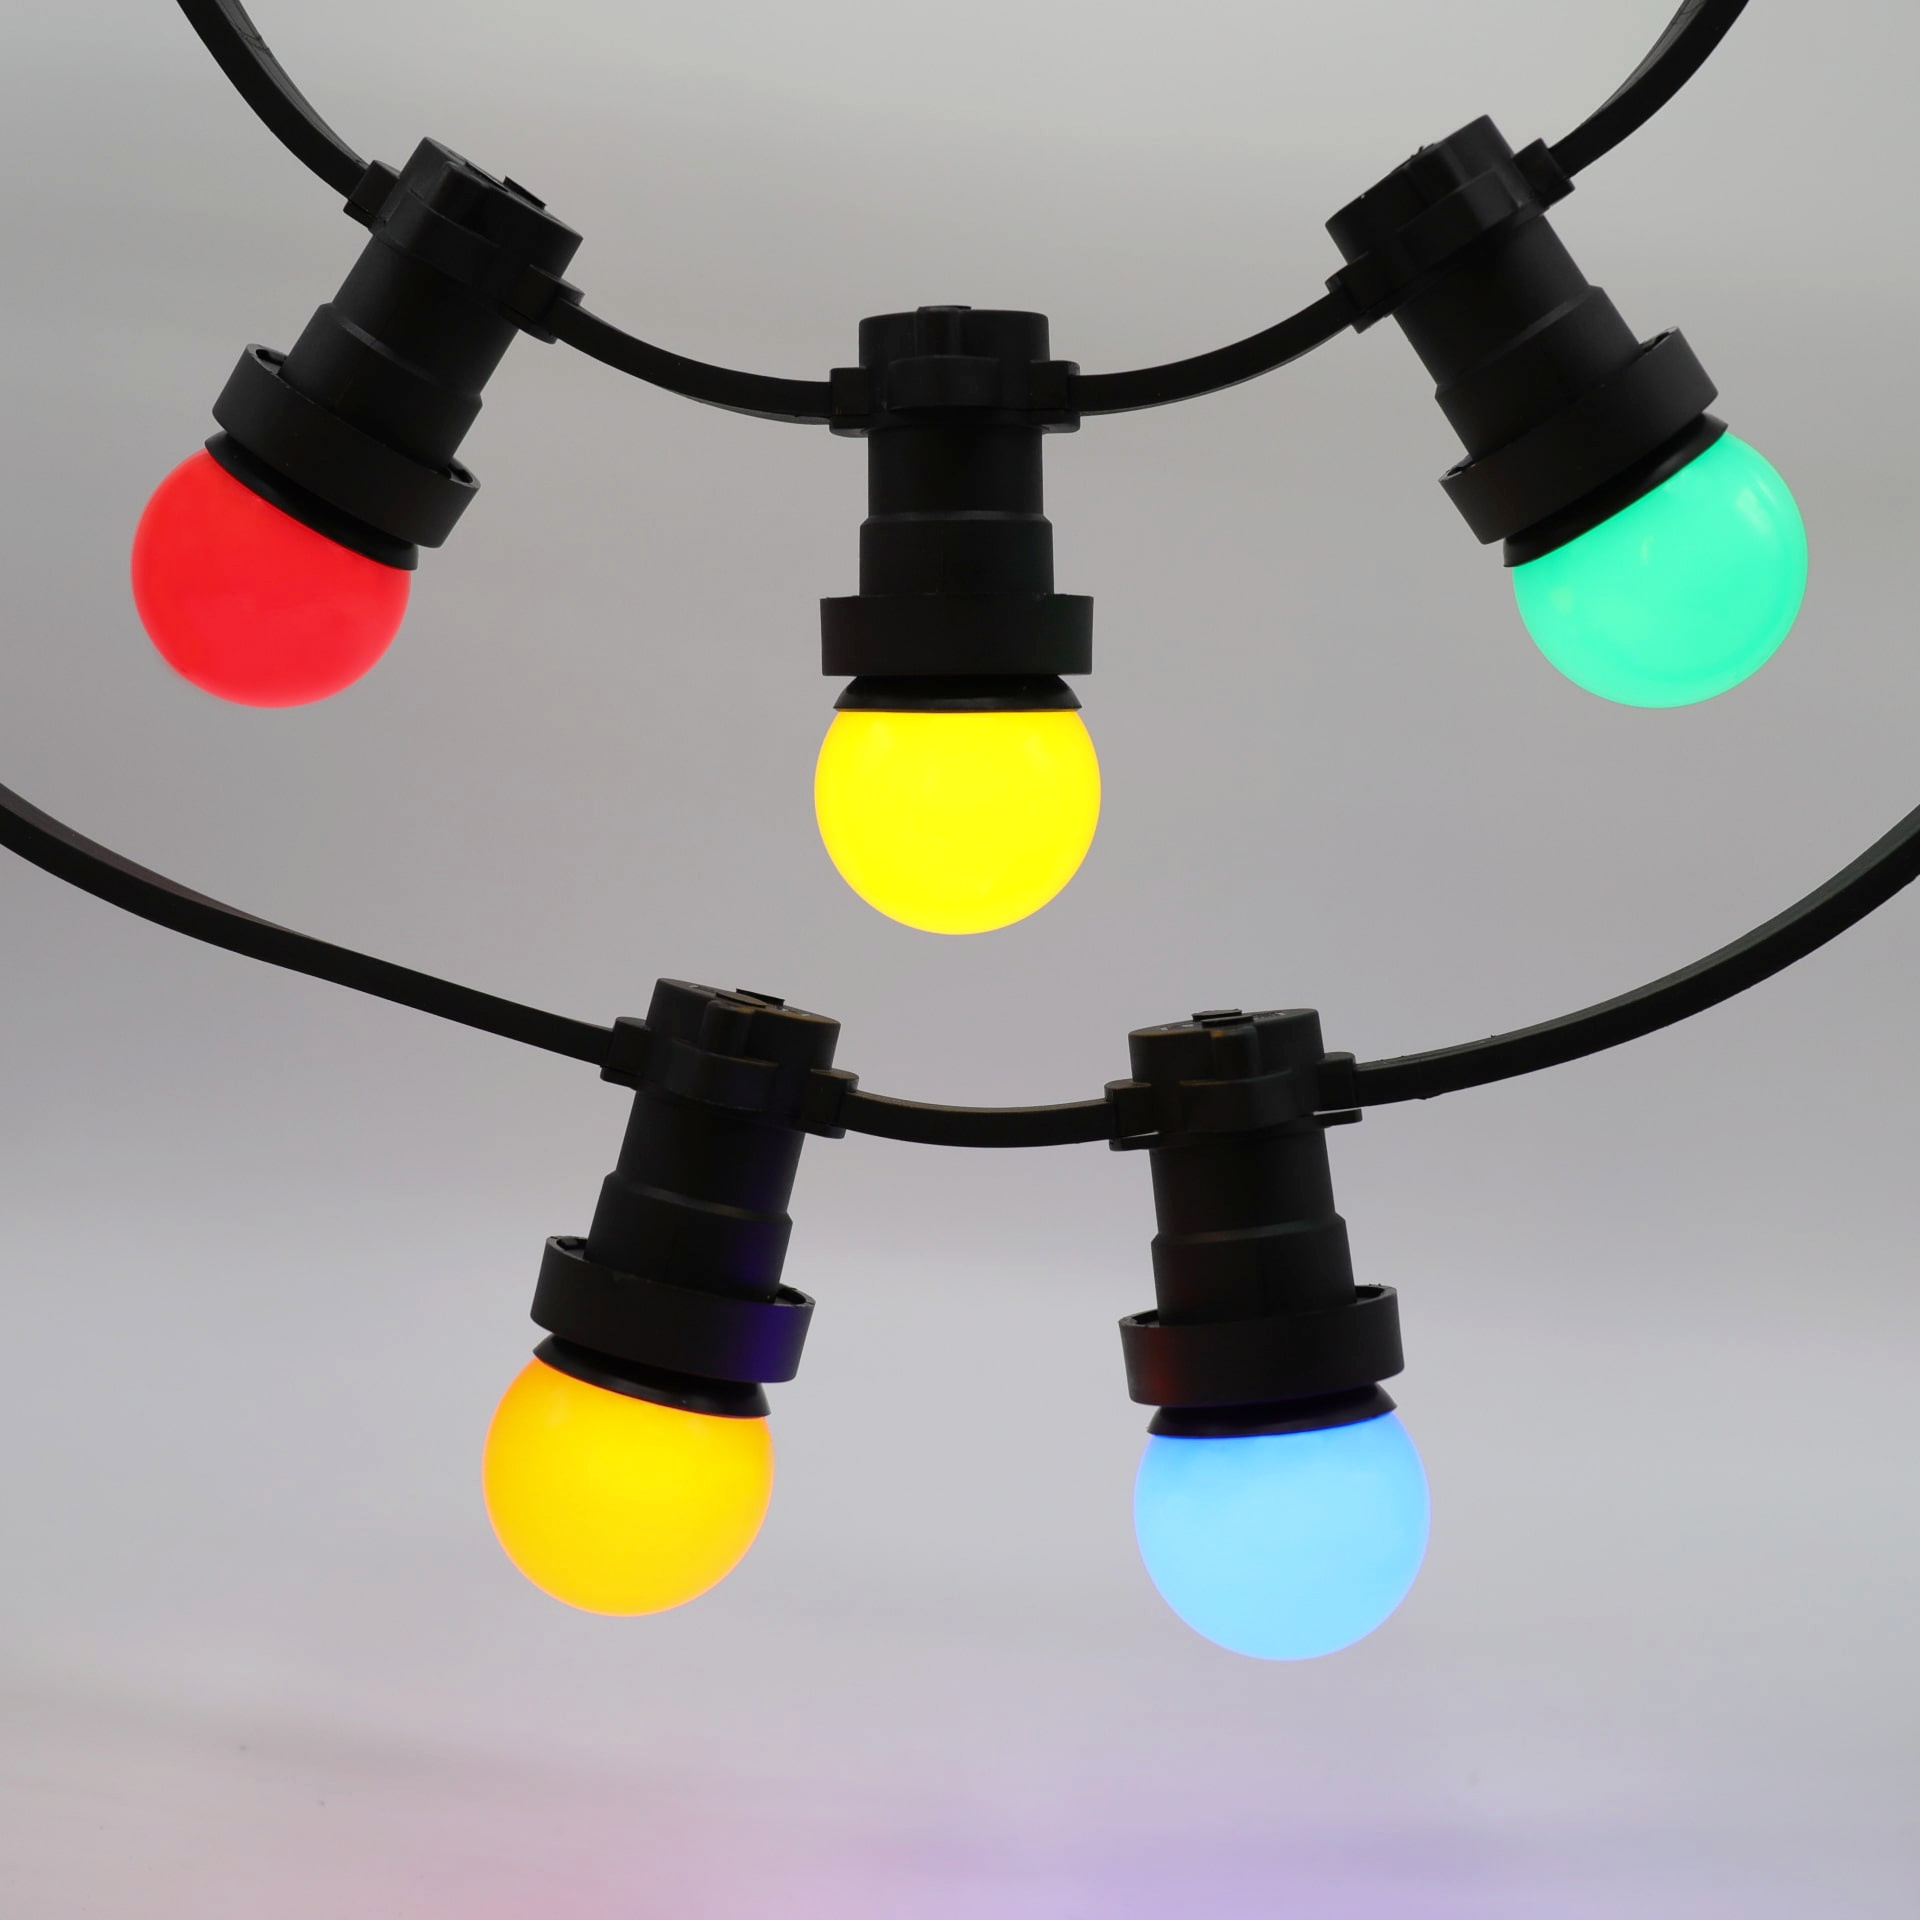 Complete prikkabel set met mix van 5 gekleurde lampen van 1 watt PrikkabelLED.nl